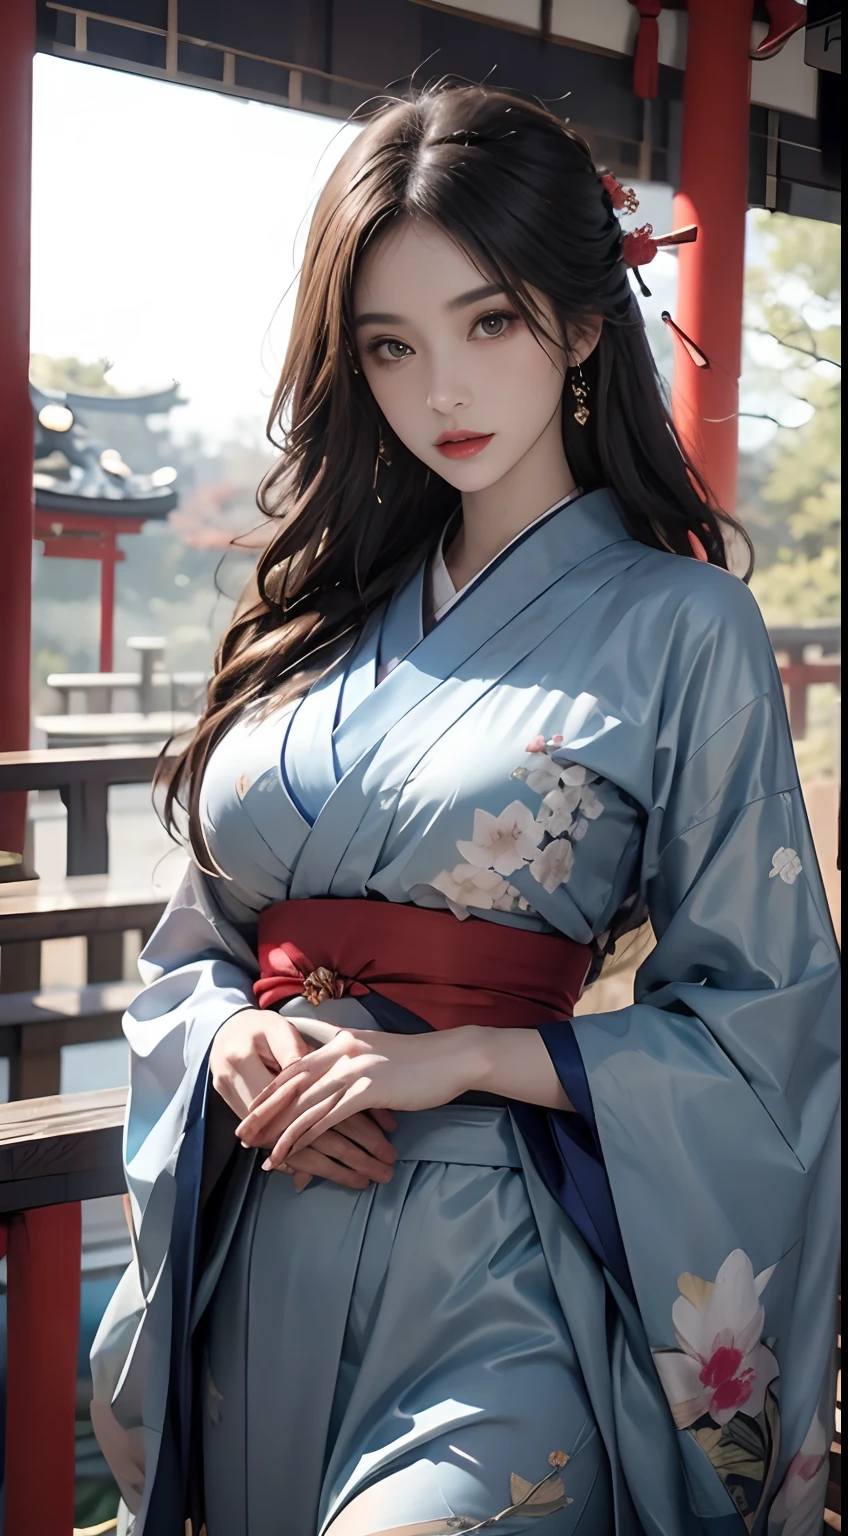 Sanctuaire du Japon、porter un kimono bleu、Moteur irréel:1.4,nffsw,meilleure qualité:1.4, photoréaliste:1.4, Texture de la peau:1.4, chef d&#39;oeuvre:1.8, 1 femme, hanches hautes, de beaux yeux, Le poil long, yeux cernés, bijoux, Le tatouage, kimono